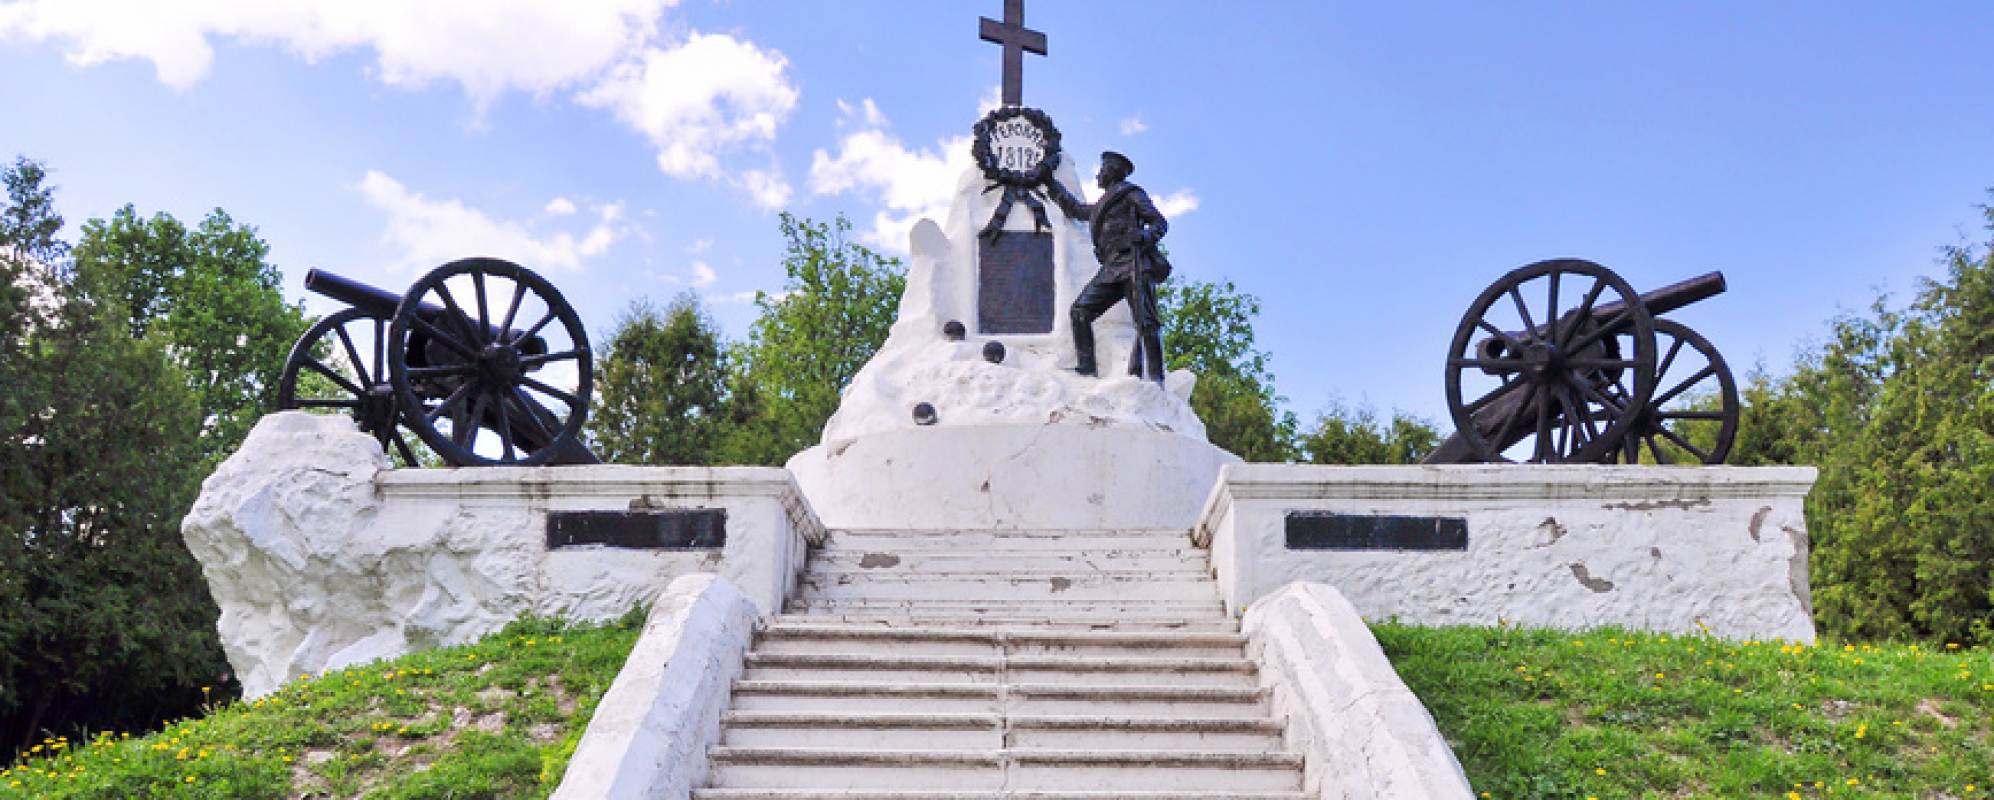 Фотографии памятника Памятник Героям 1812 года